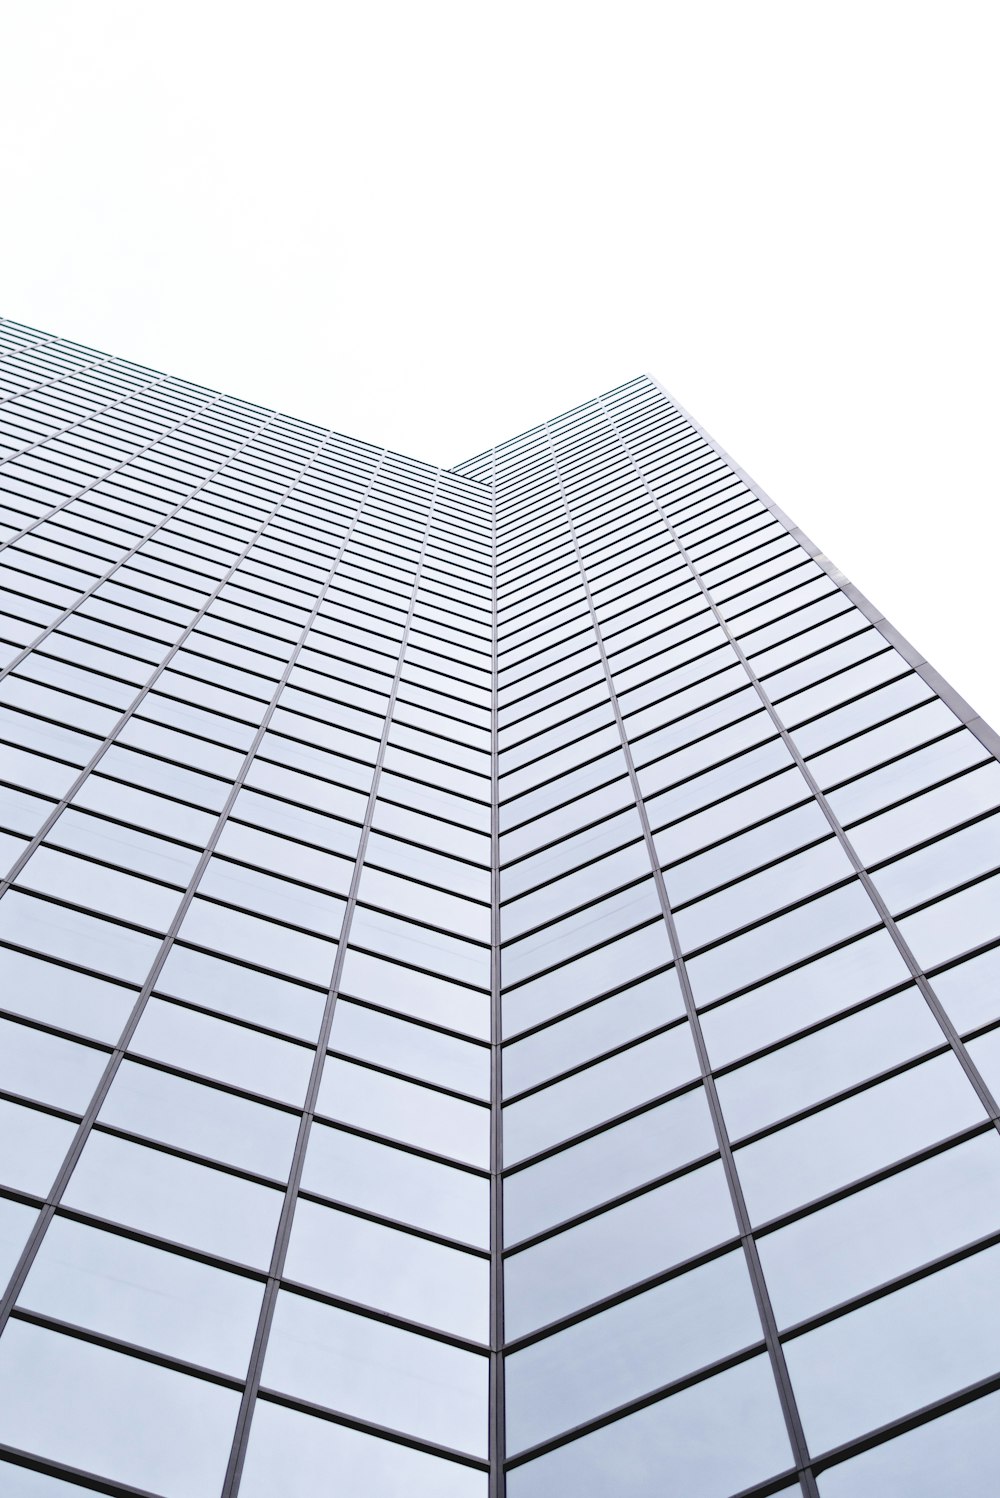 Fotografia dal basso di un grattacielo in vetro